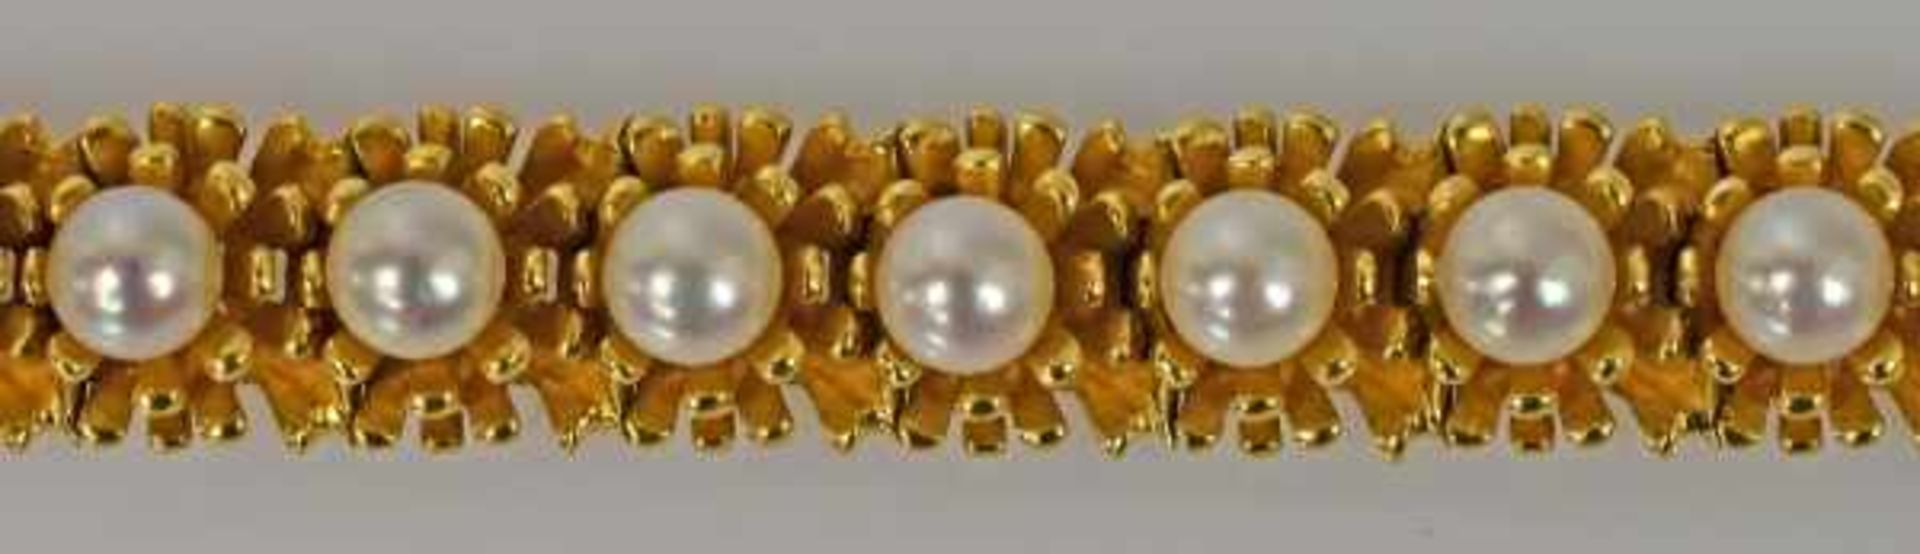 ARMBAND vegetabiler Entwurf mit Blütengliedern jeweils besetzt mit einer Perle, gesamt 19 weisse - Bild 3 aus 3